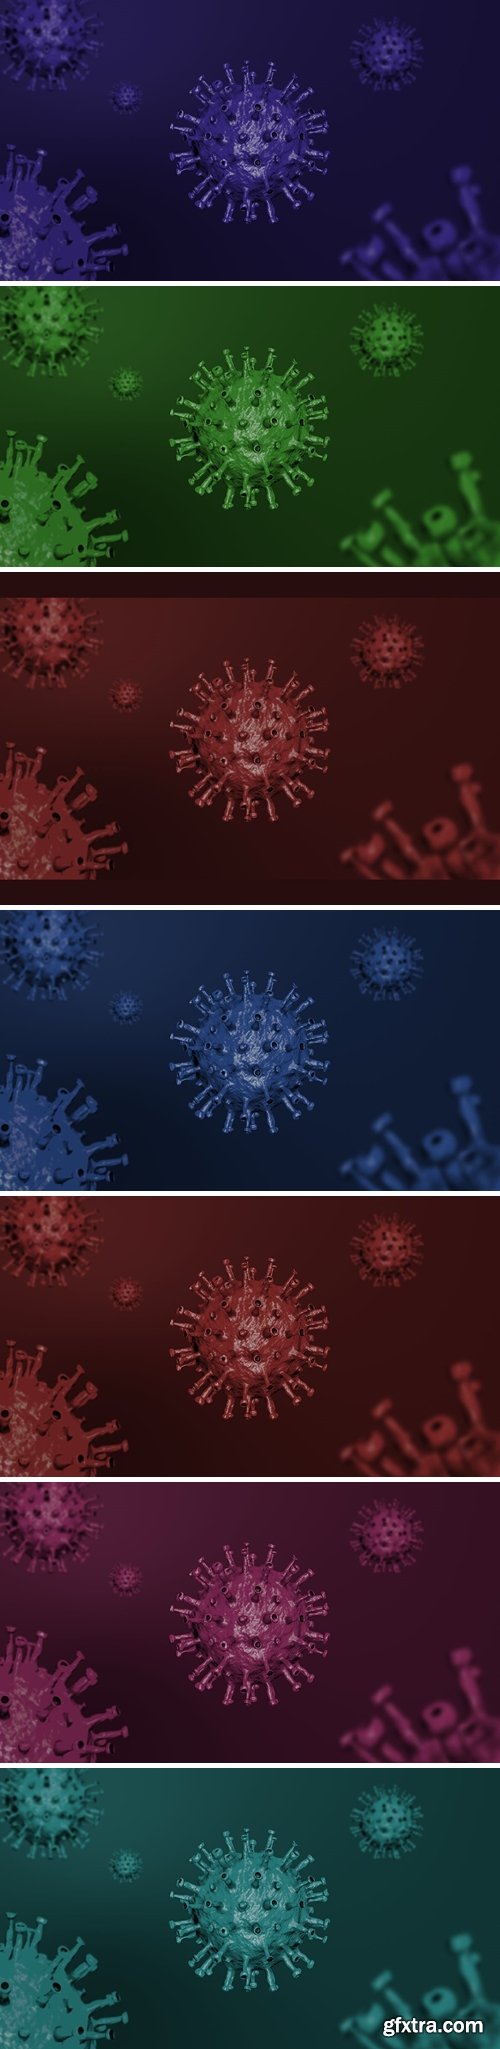 Coronavirus ( Covid-19 ) Background Dark Pack